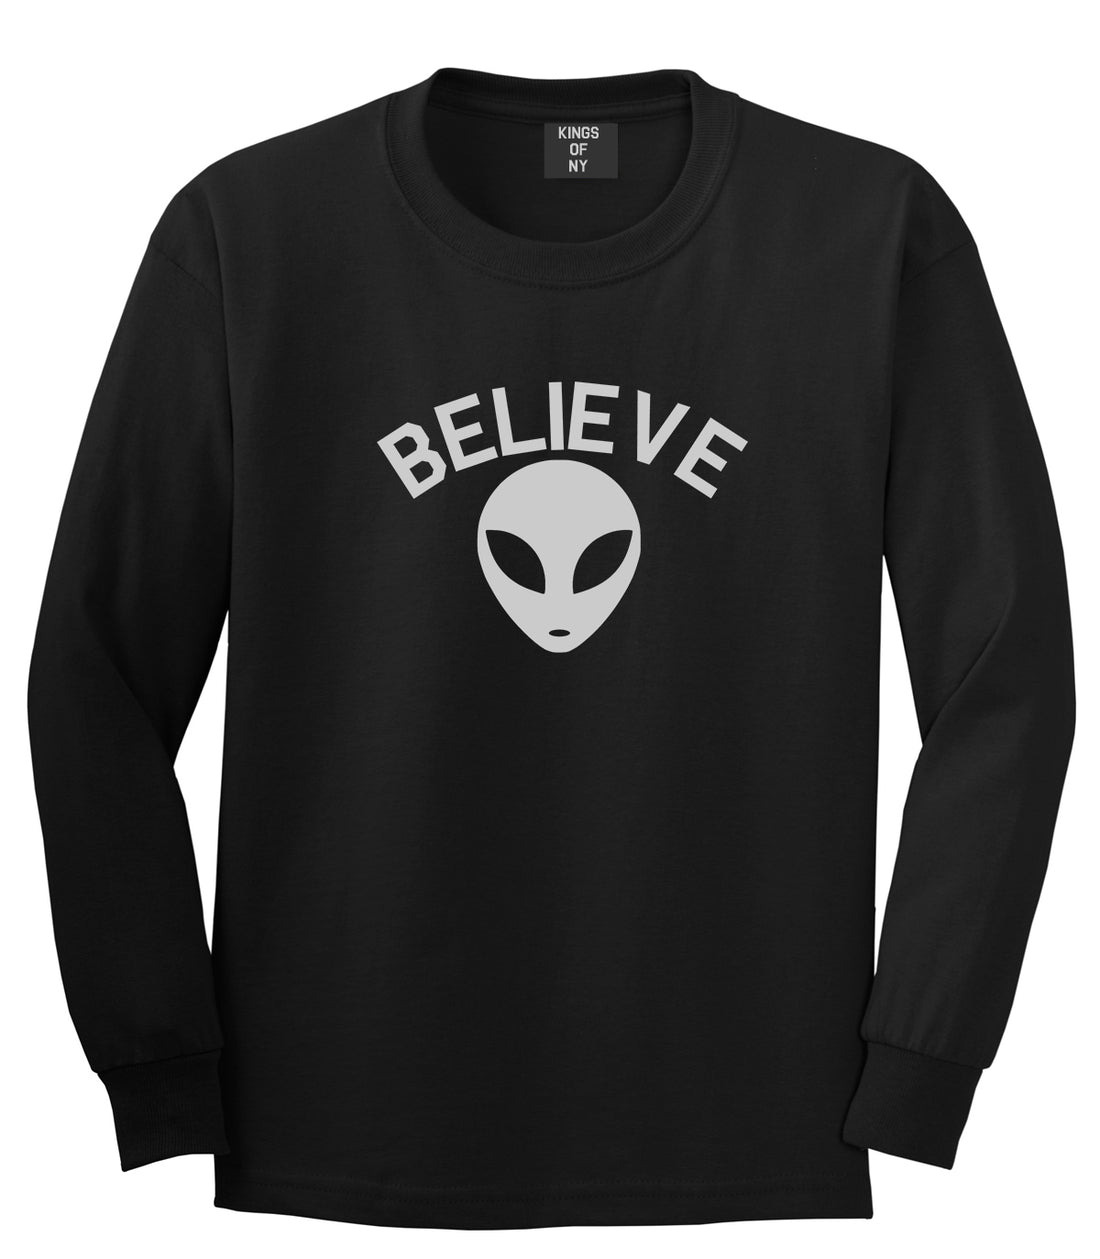 Believe Alien Black Long Sleeve T-Shirt by Kings Of NY